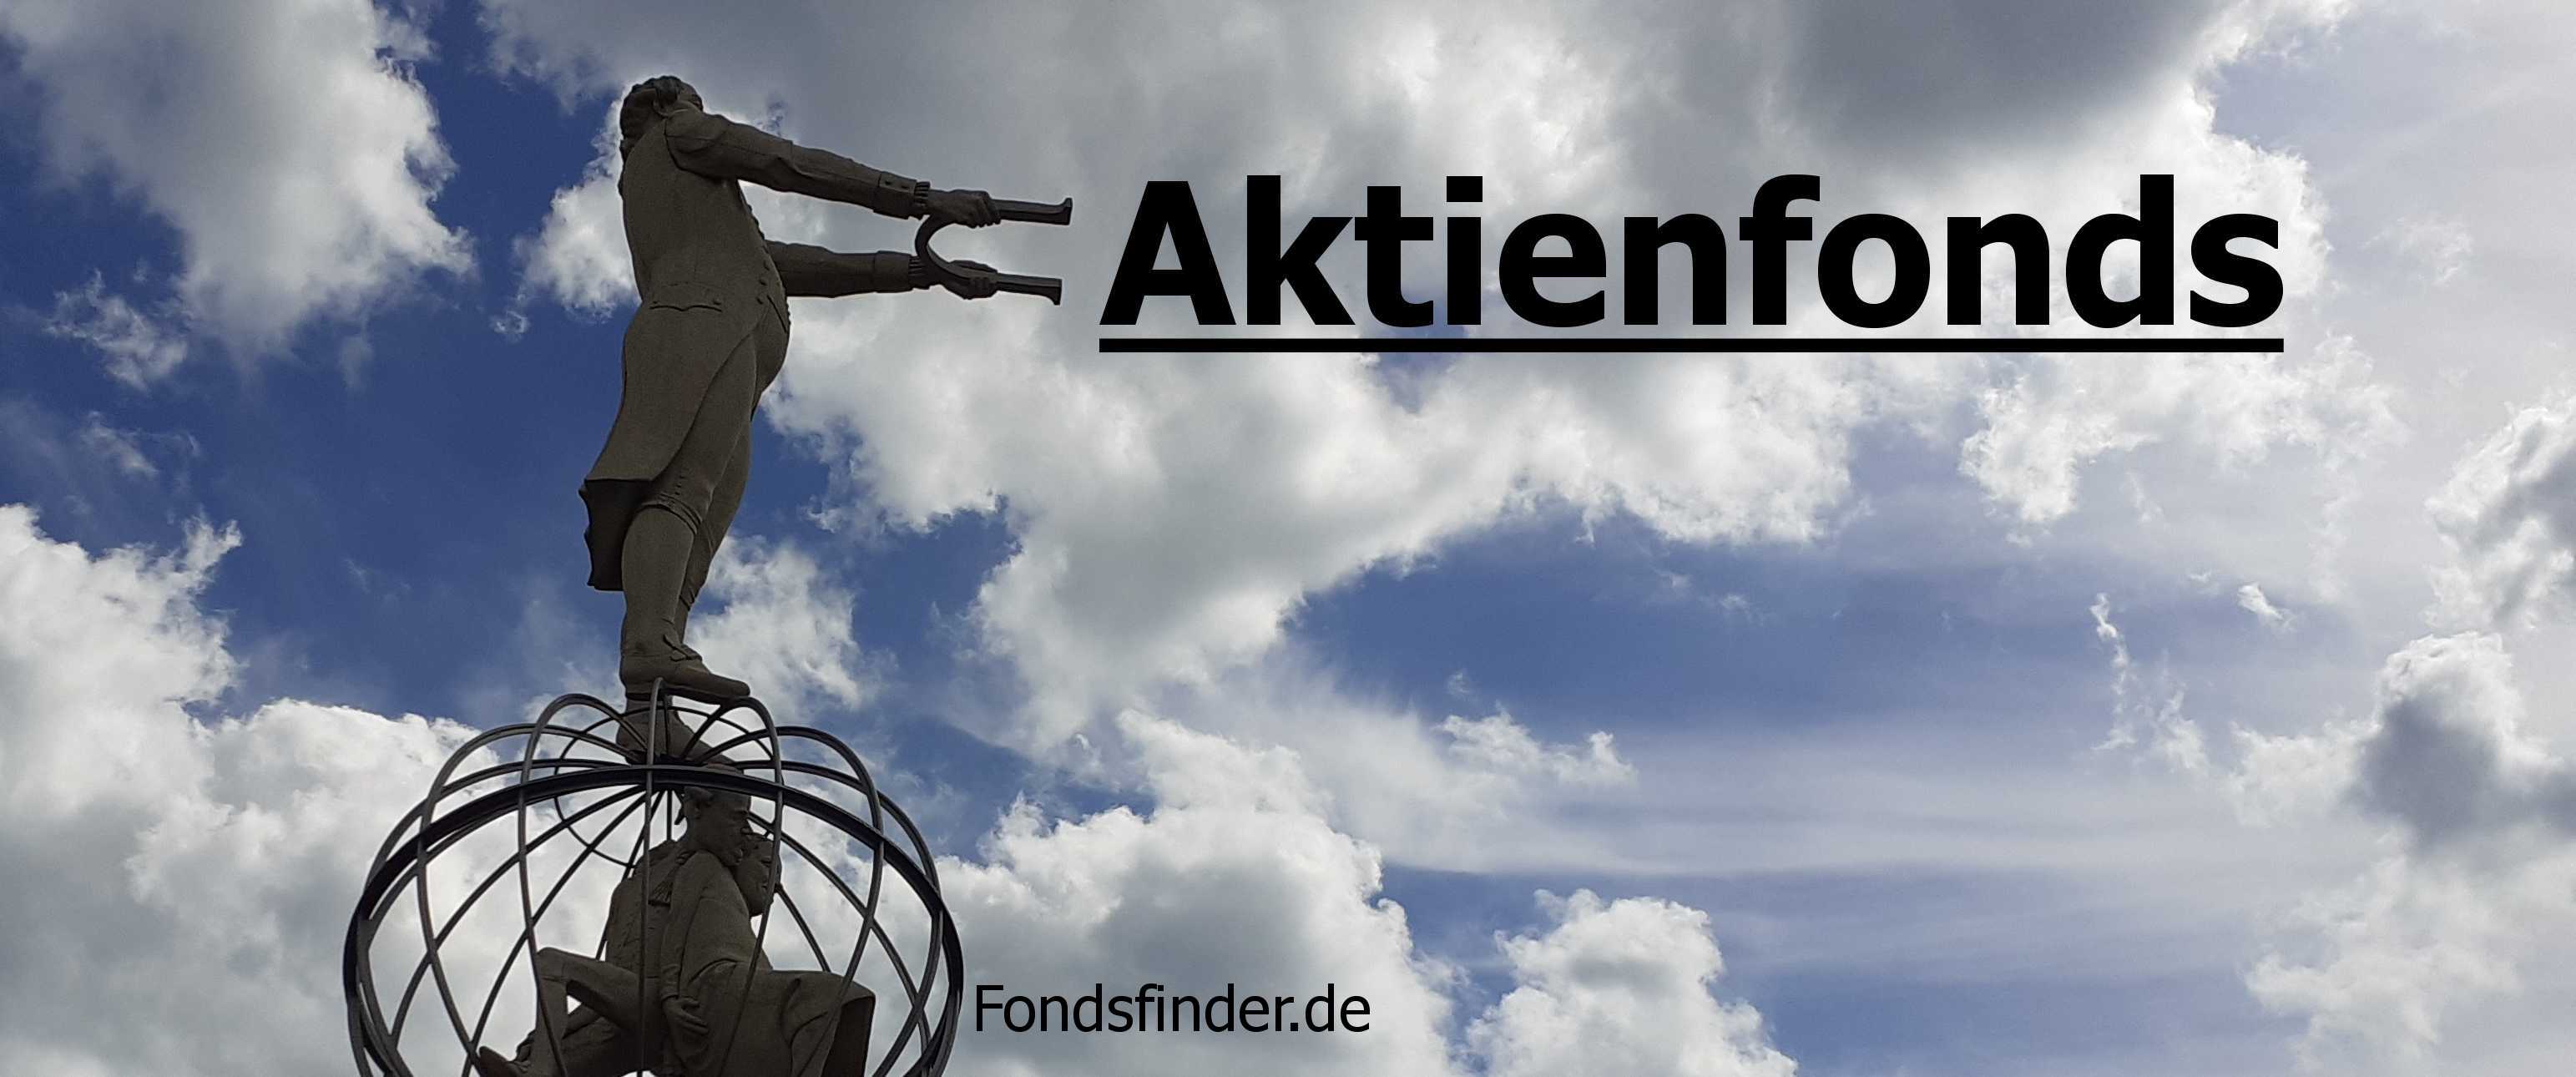 Aktienfonds finden via Fondsfinder.de